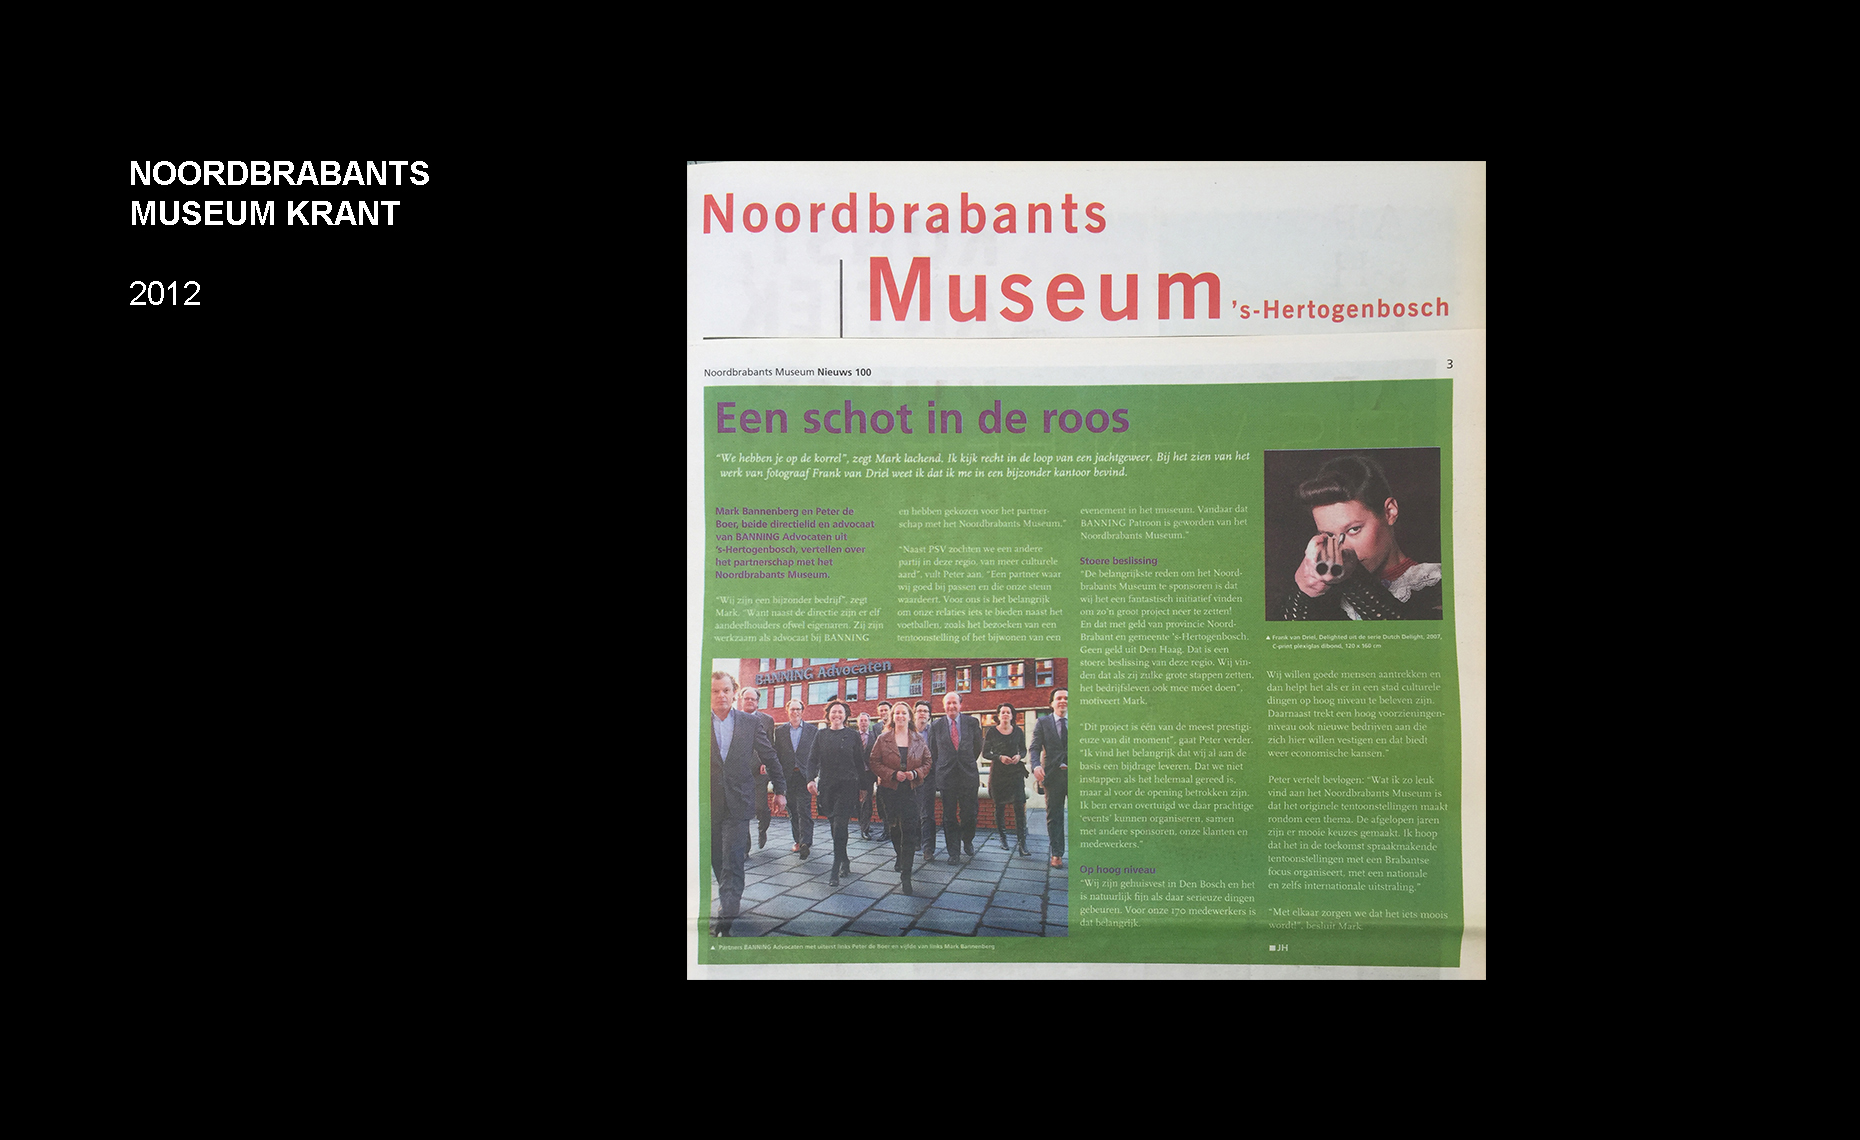  Frank van Driel Publicatie Noordbrabants Museum